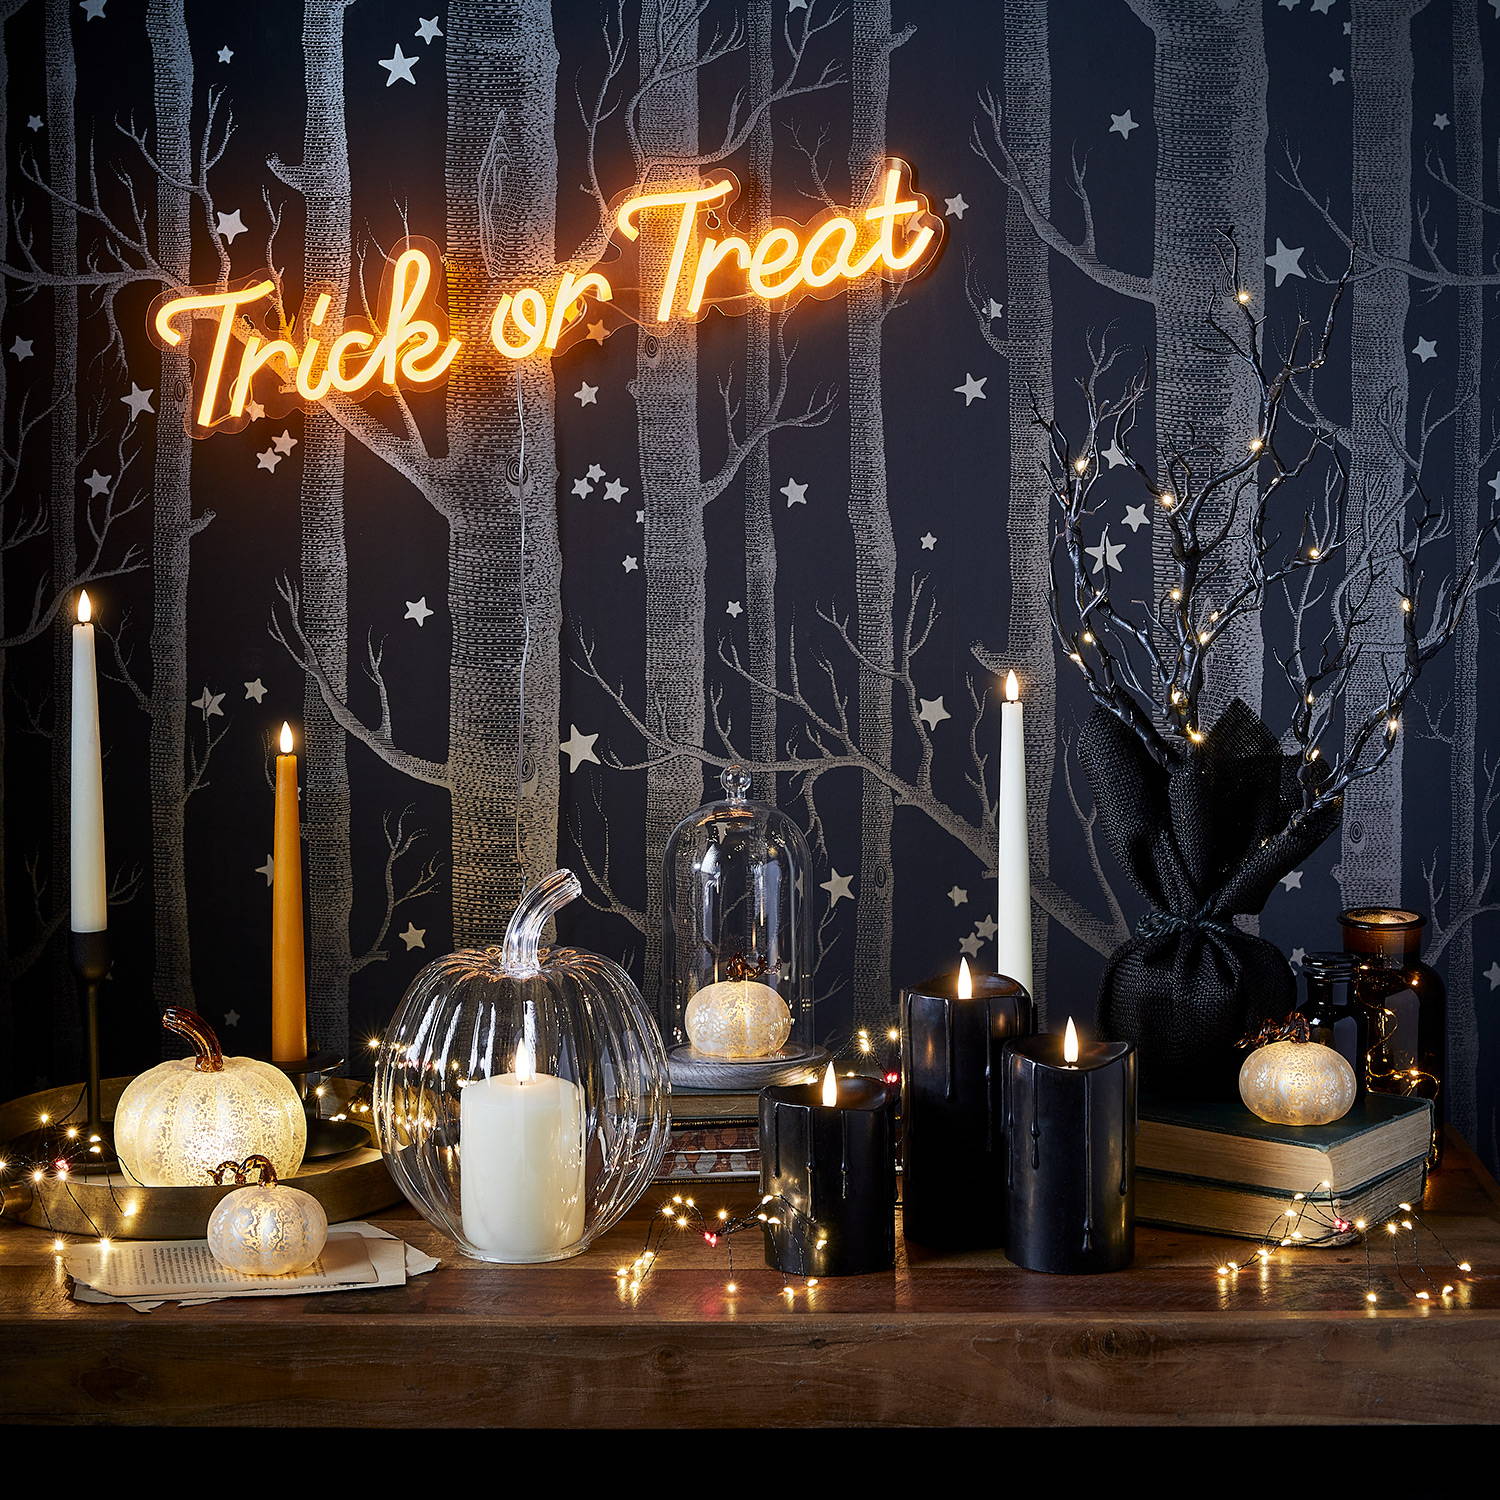 Tisch  mit verschiedenen Halloweendekorationen wie LED Kürbisse, Kerzen und Lichterketten